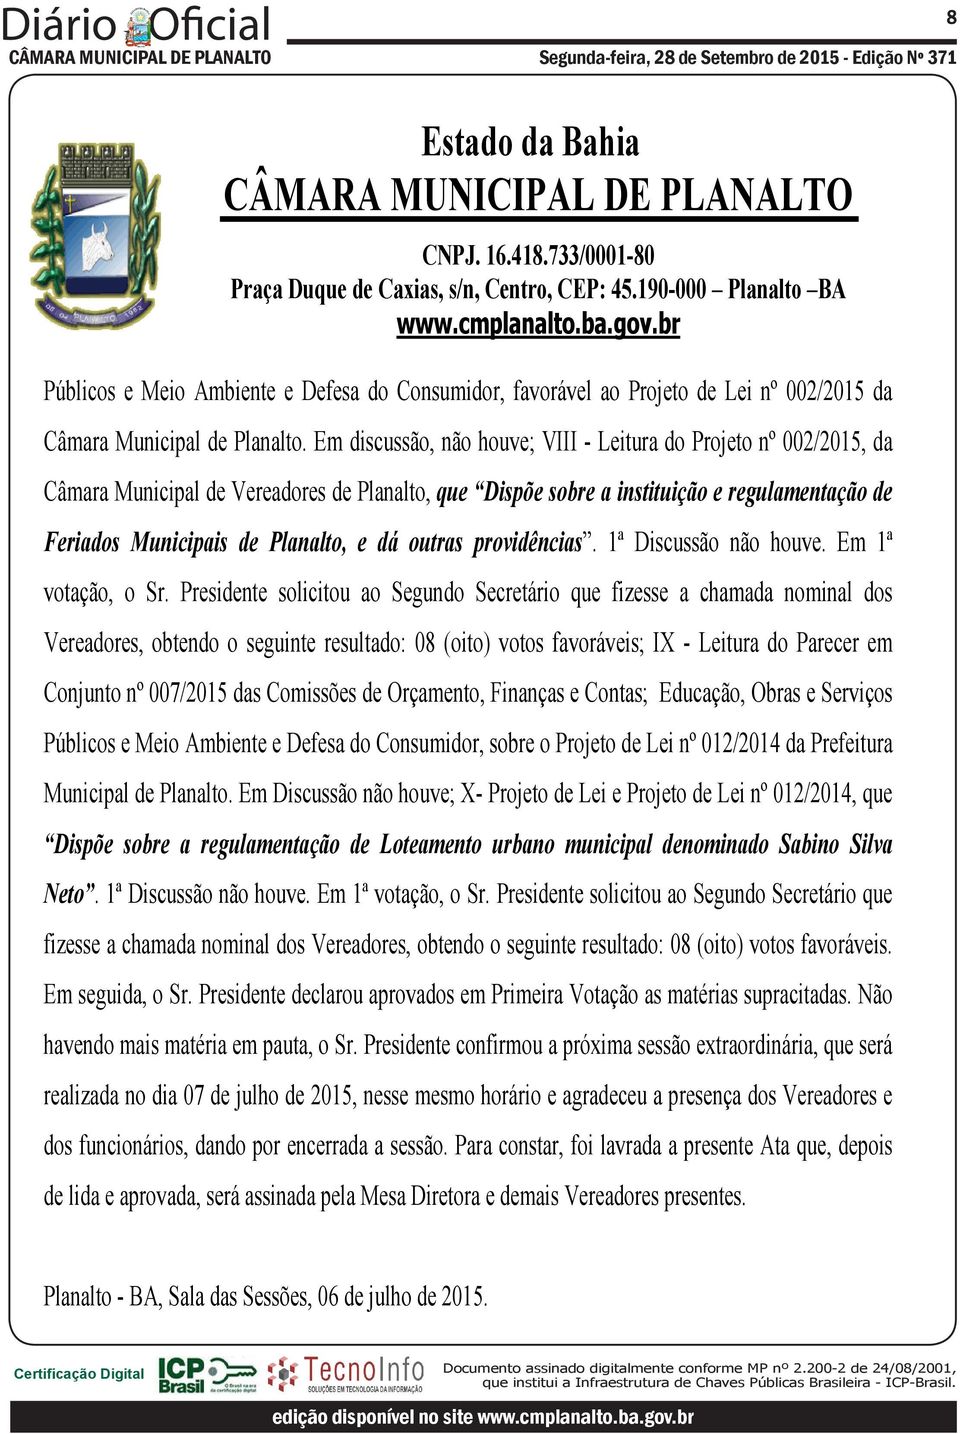 Em discussão, não houve; VIII - Leitura do Projeto nº 002/2015, da Câmara Municipal de Vereadores de Planalto, que Dispõe sobre a instituição e regulamentação de Feriados Municipais de Planalto, e dá